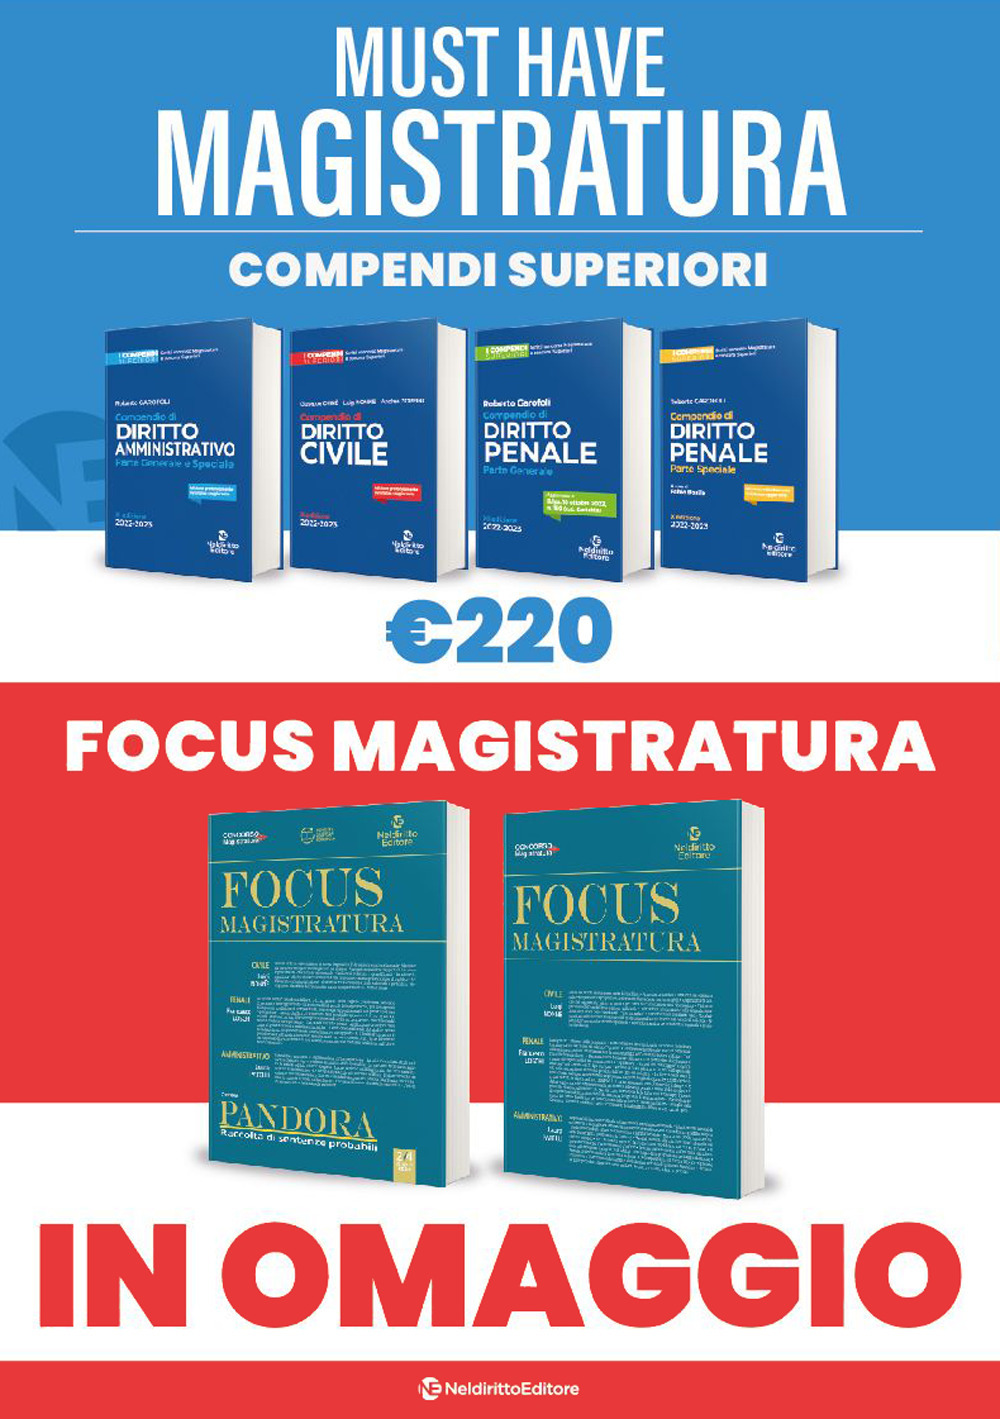 Must have magistratura: Kit 4 compendi superiori + 2 Focus